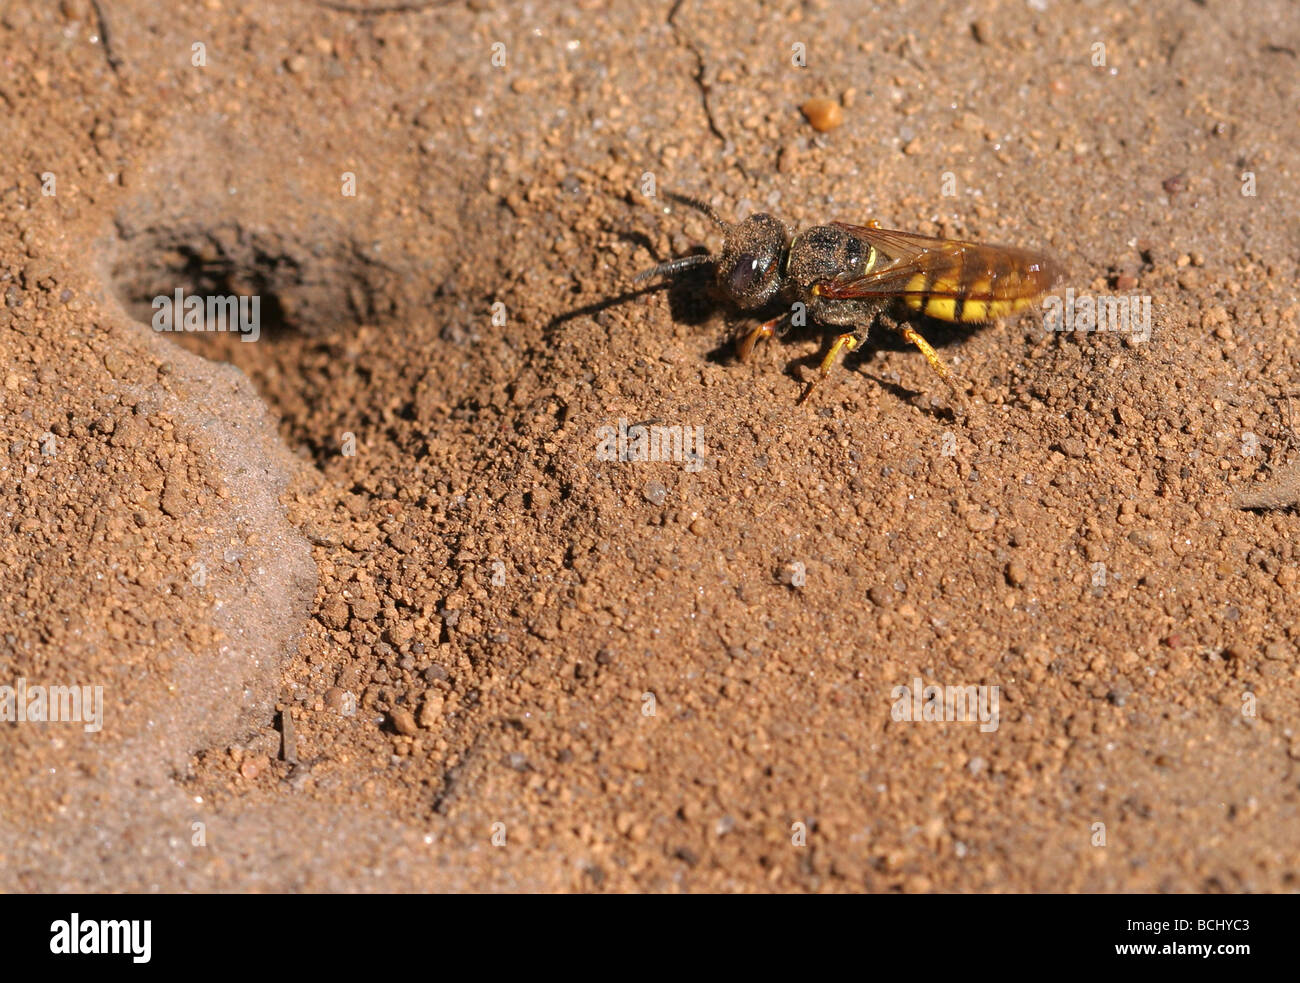 Digger wasp Sphecidae à l'entrée de son terrier de sable Banque D'Images